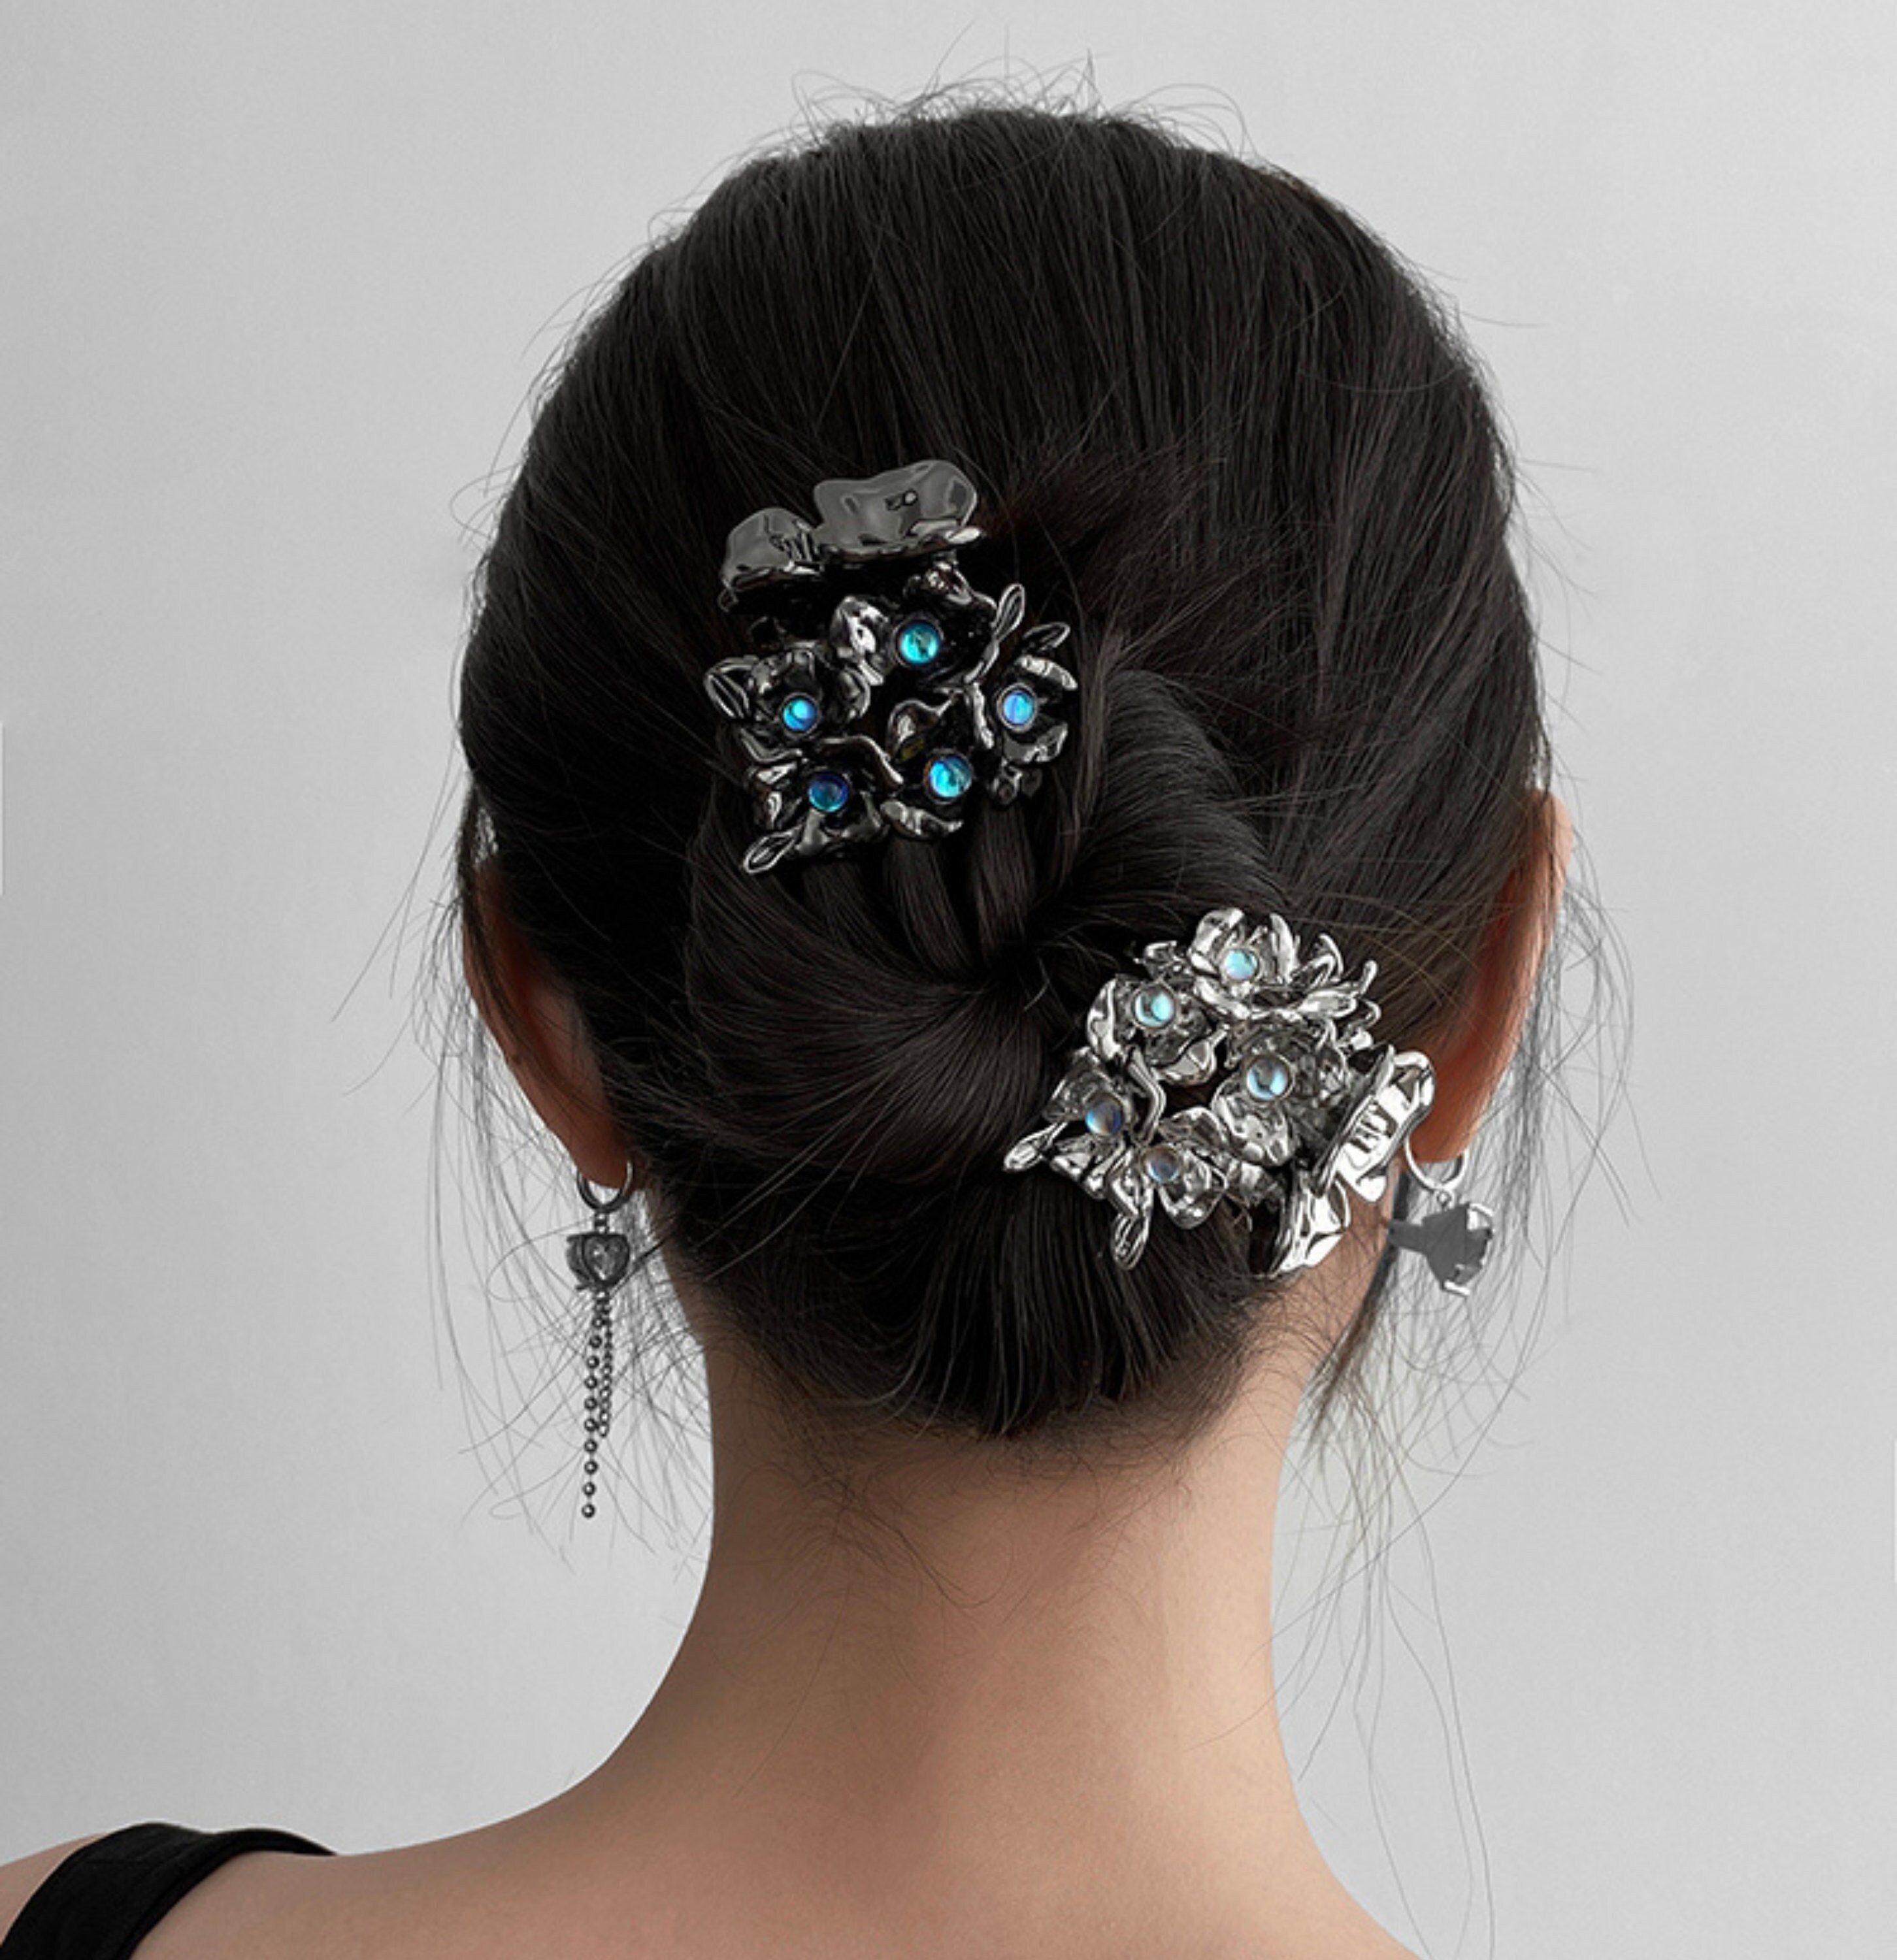 Mini Crystal Rhinestone Hair Claws Gripper Bangs Clips Holder Casualfashion 4Pcs Cute Korean Fashion Hair Accessories 